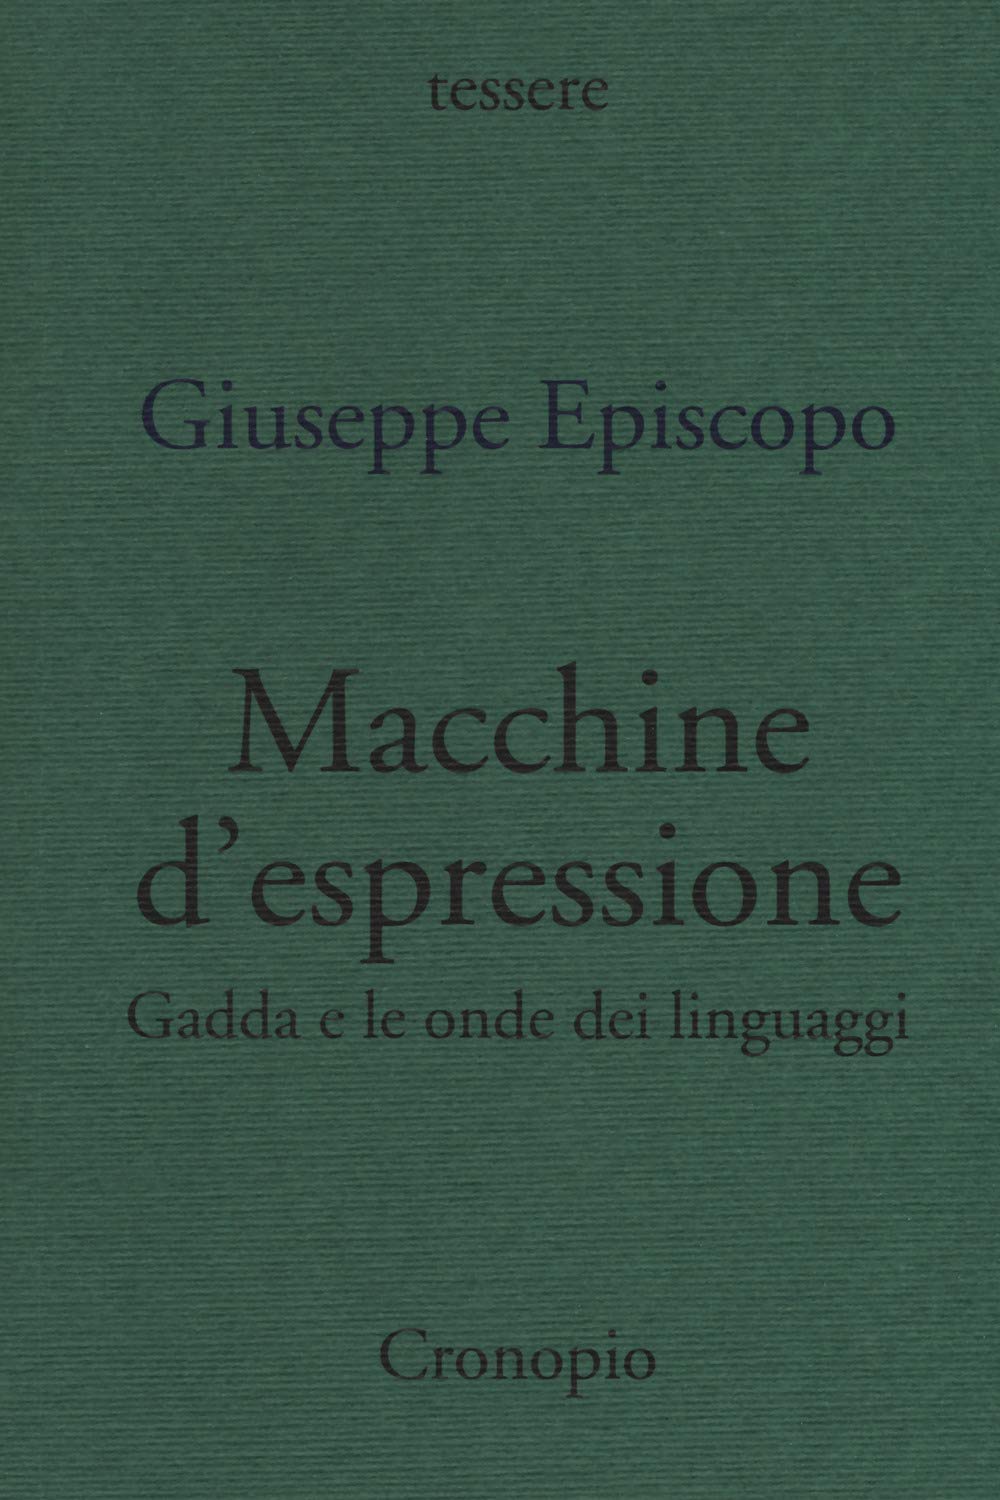 Giuseppe Episcopo, Macchine d'espressione